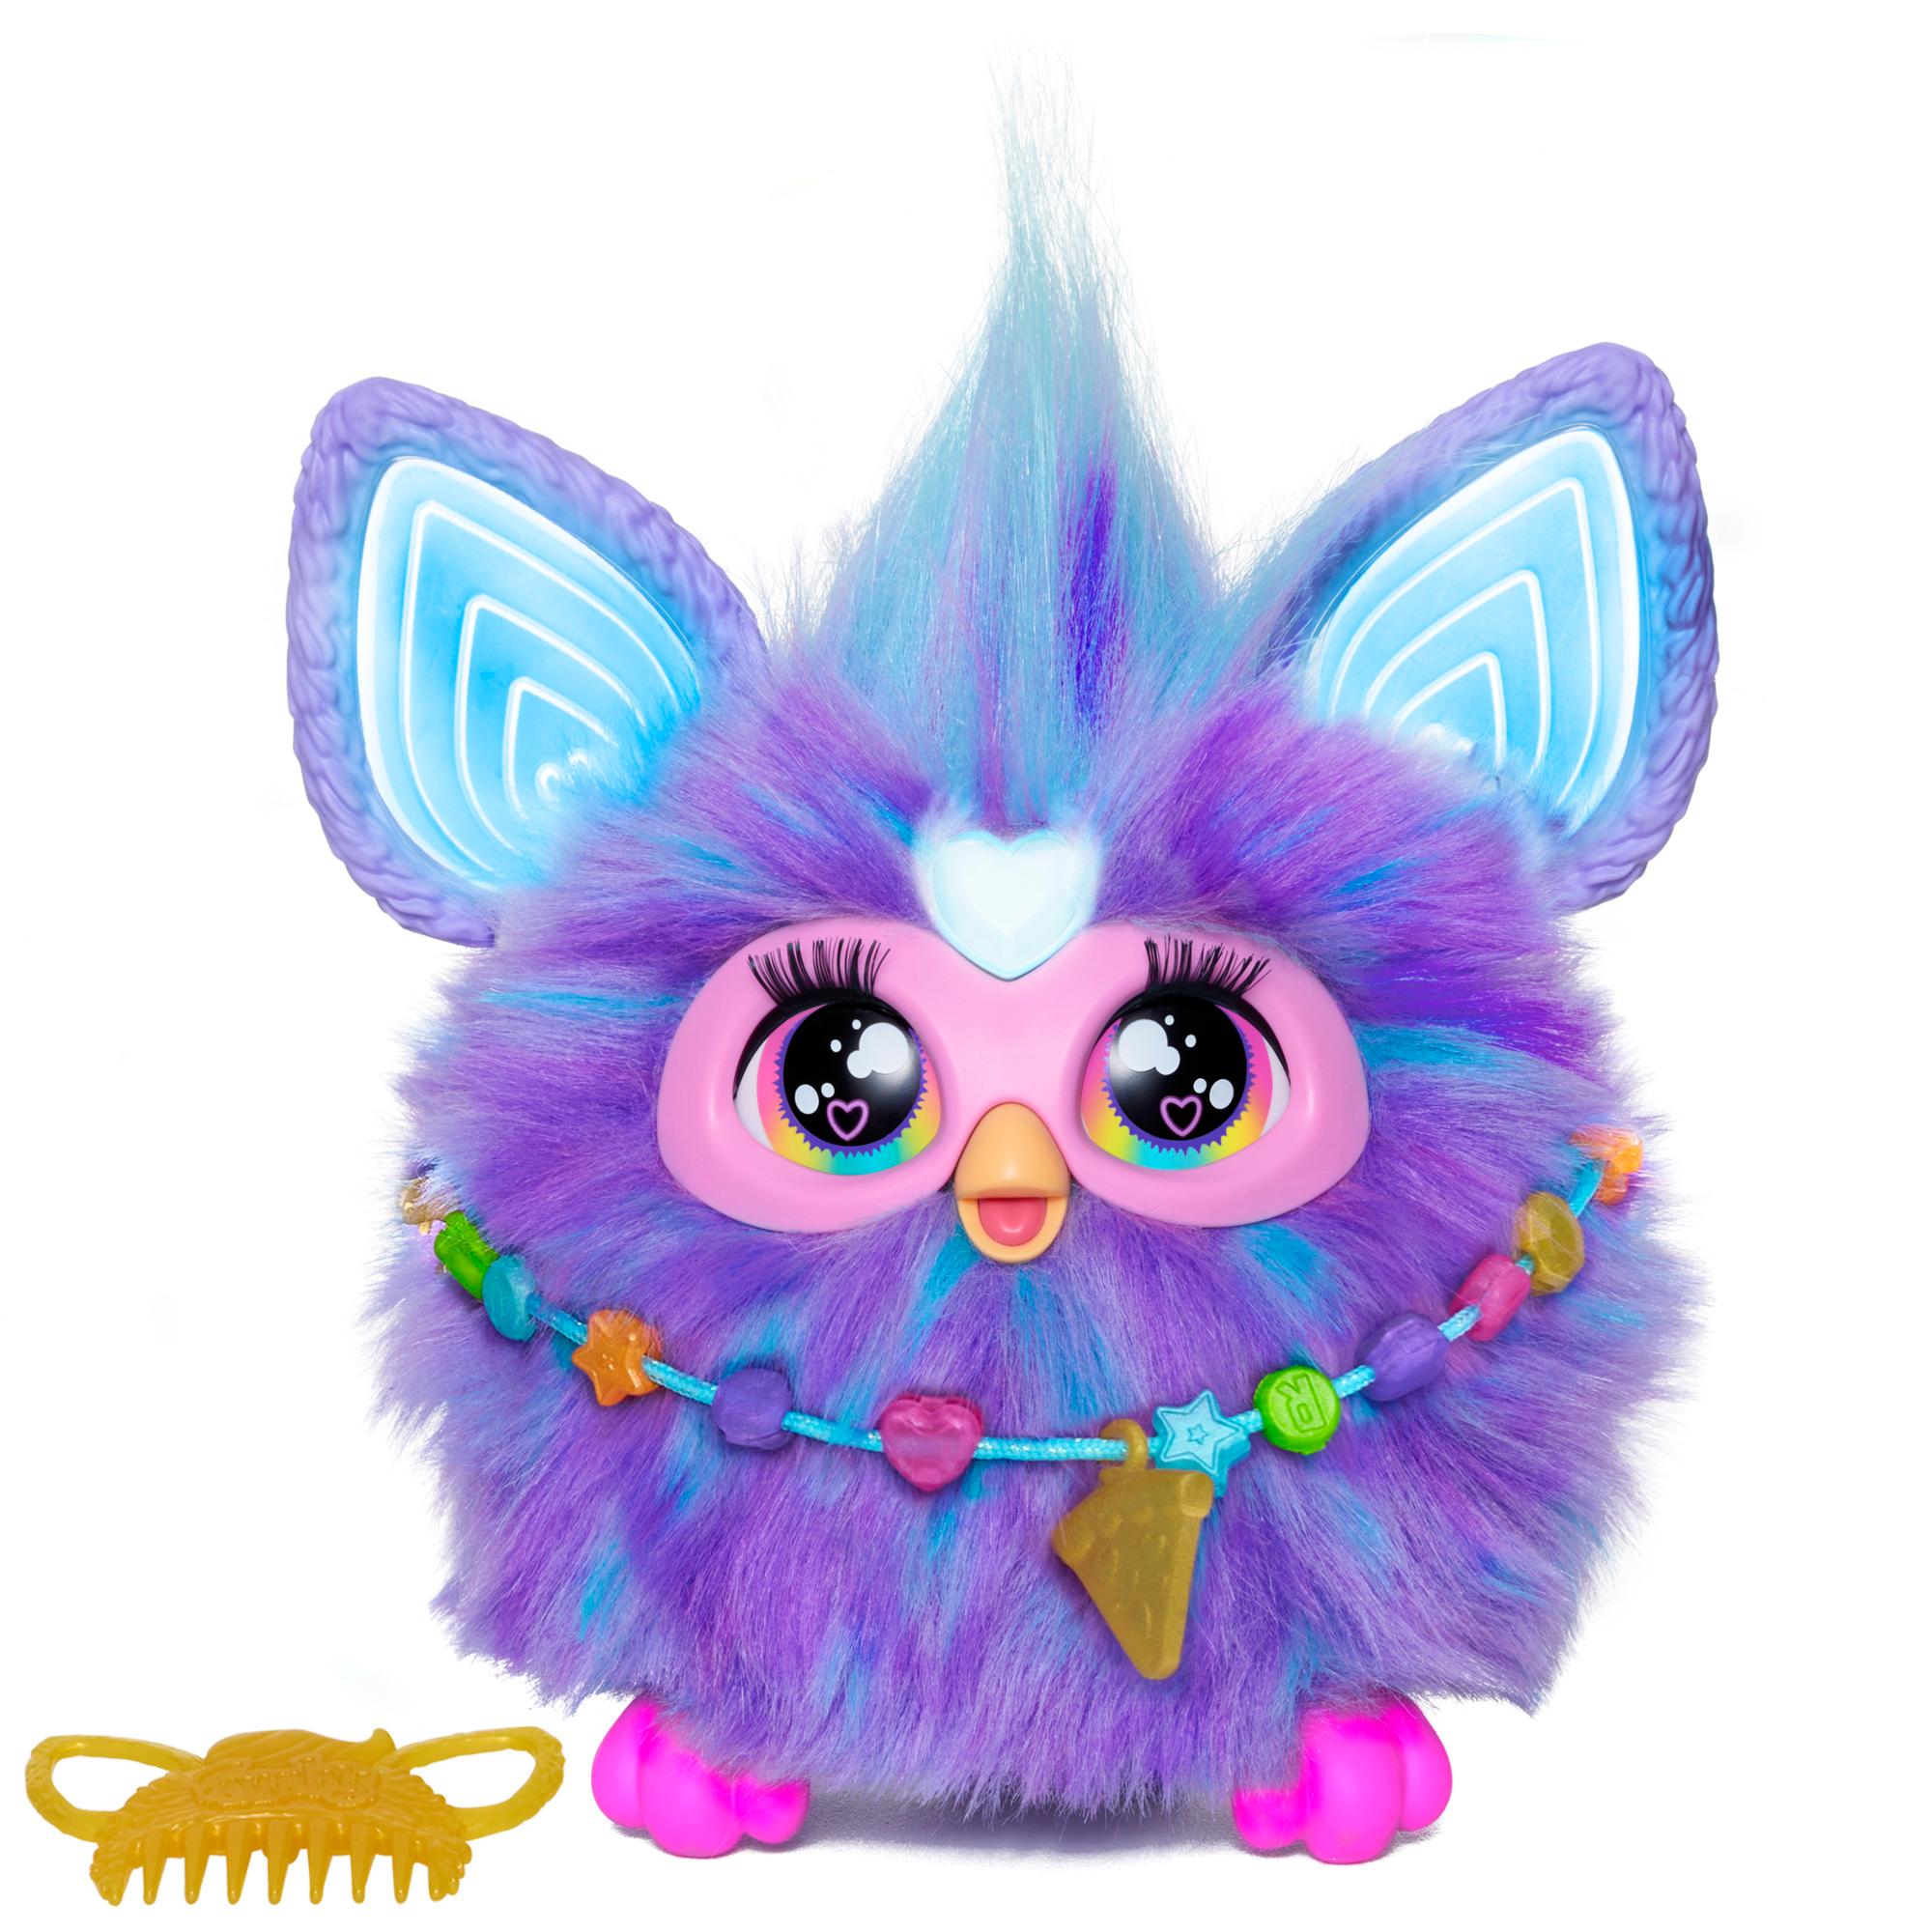 Furby, Juguete interactivo de peluche de color morado - Furby